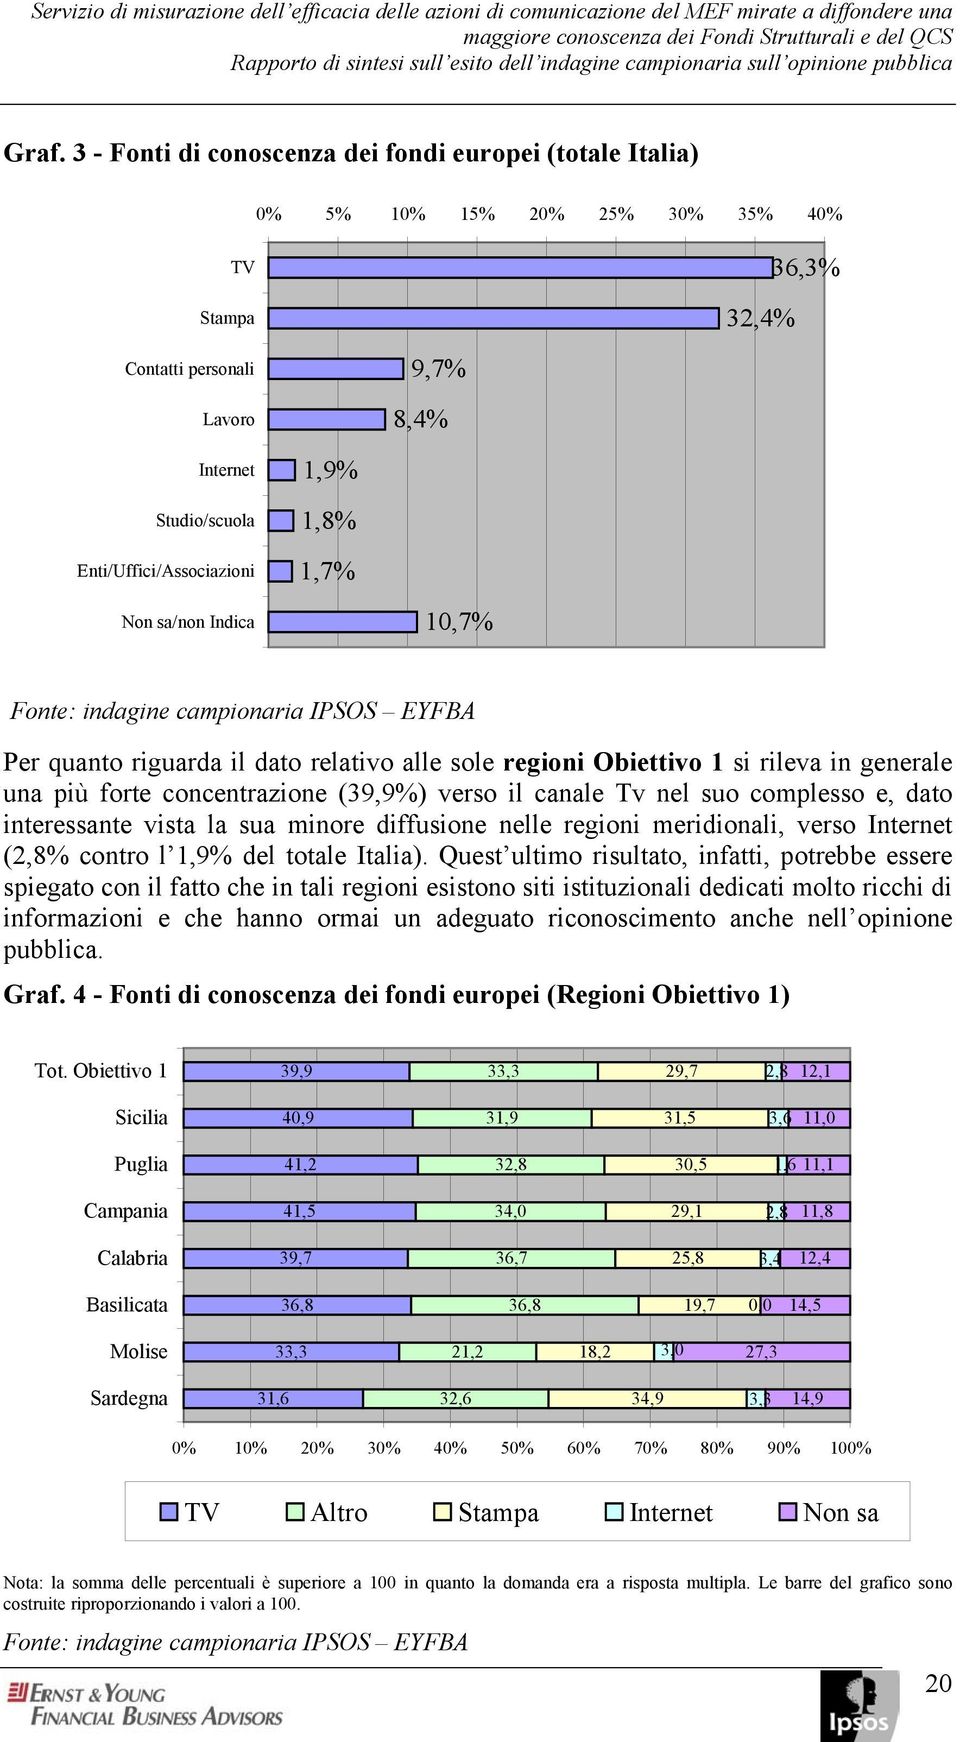 3 - Fonti di conoscenza dei fondi europei (totale Italia) 0% 5% 10% 15% 20% 25% 30% 35% 40% TV Stampa 32,4% 36,3% Contatti personali Lavoro 9,7% 8,4% Internet Studio/scuola Enti/Uffici/Associazioni